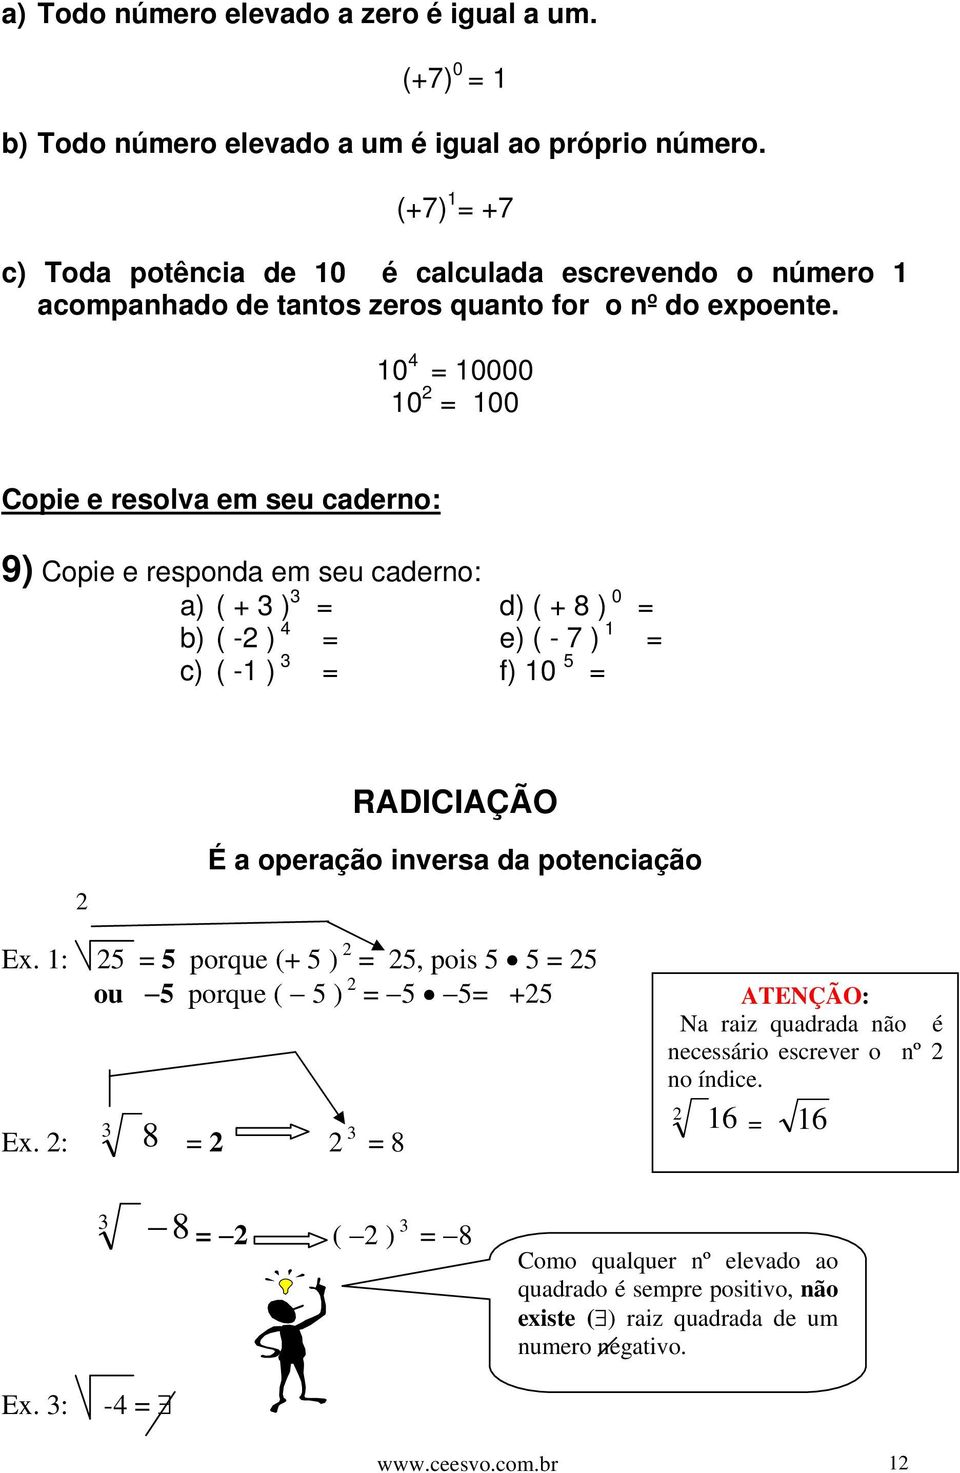 10 4 = 10000 10 2 = 100 Copie e resolva em seu caderno: 9) Copie e responda em seu caderno: a) ( + 3 ) 3 = d) ( + 8 ) 0 = b) ( -2 ) 4 = e) ( - 7 ) 1 = c) ( -1 ) 3 = f) 10 5 = RADICIAÇÃO 2 É a